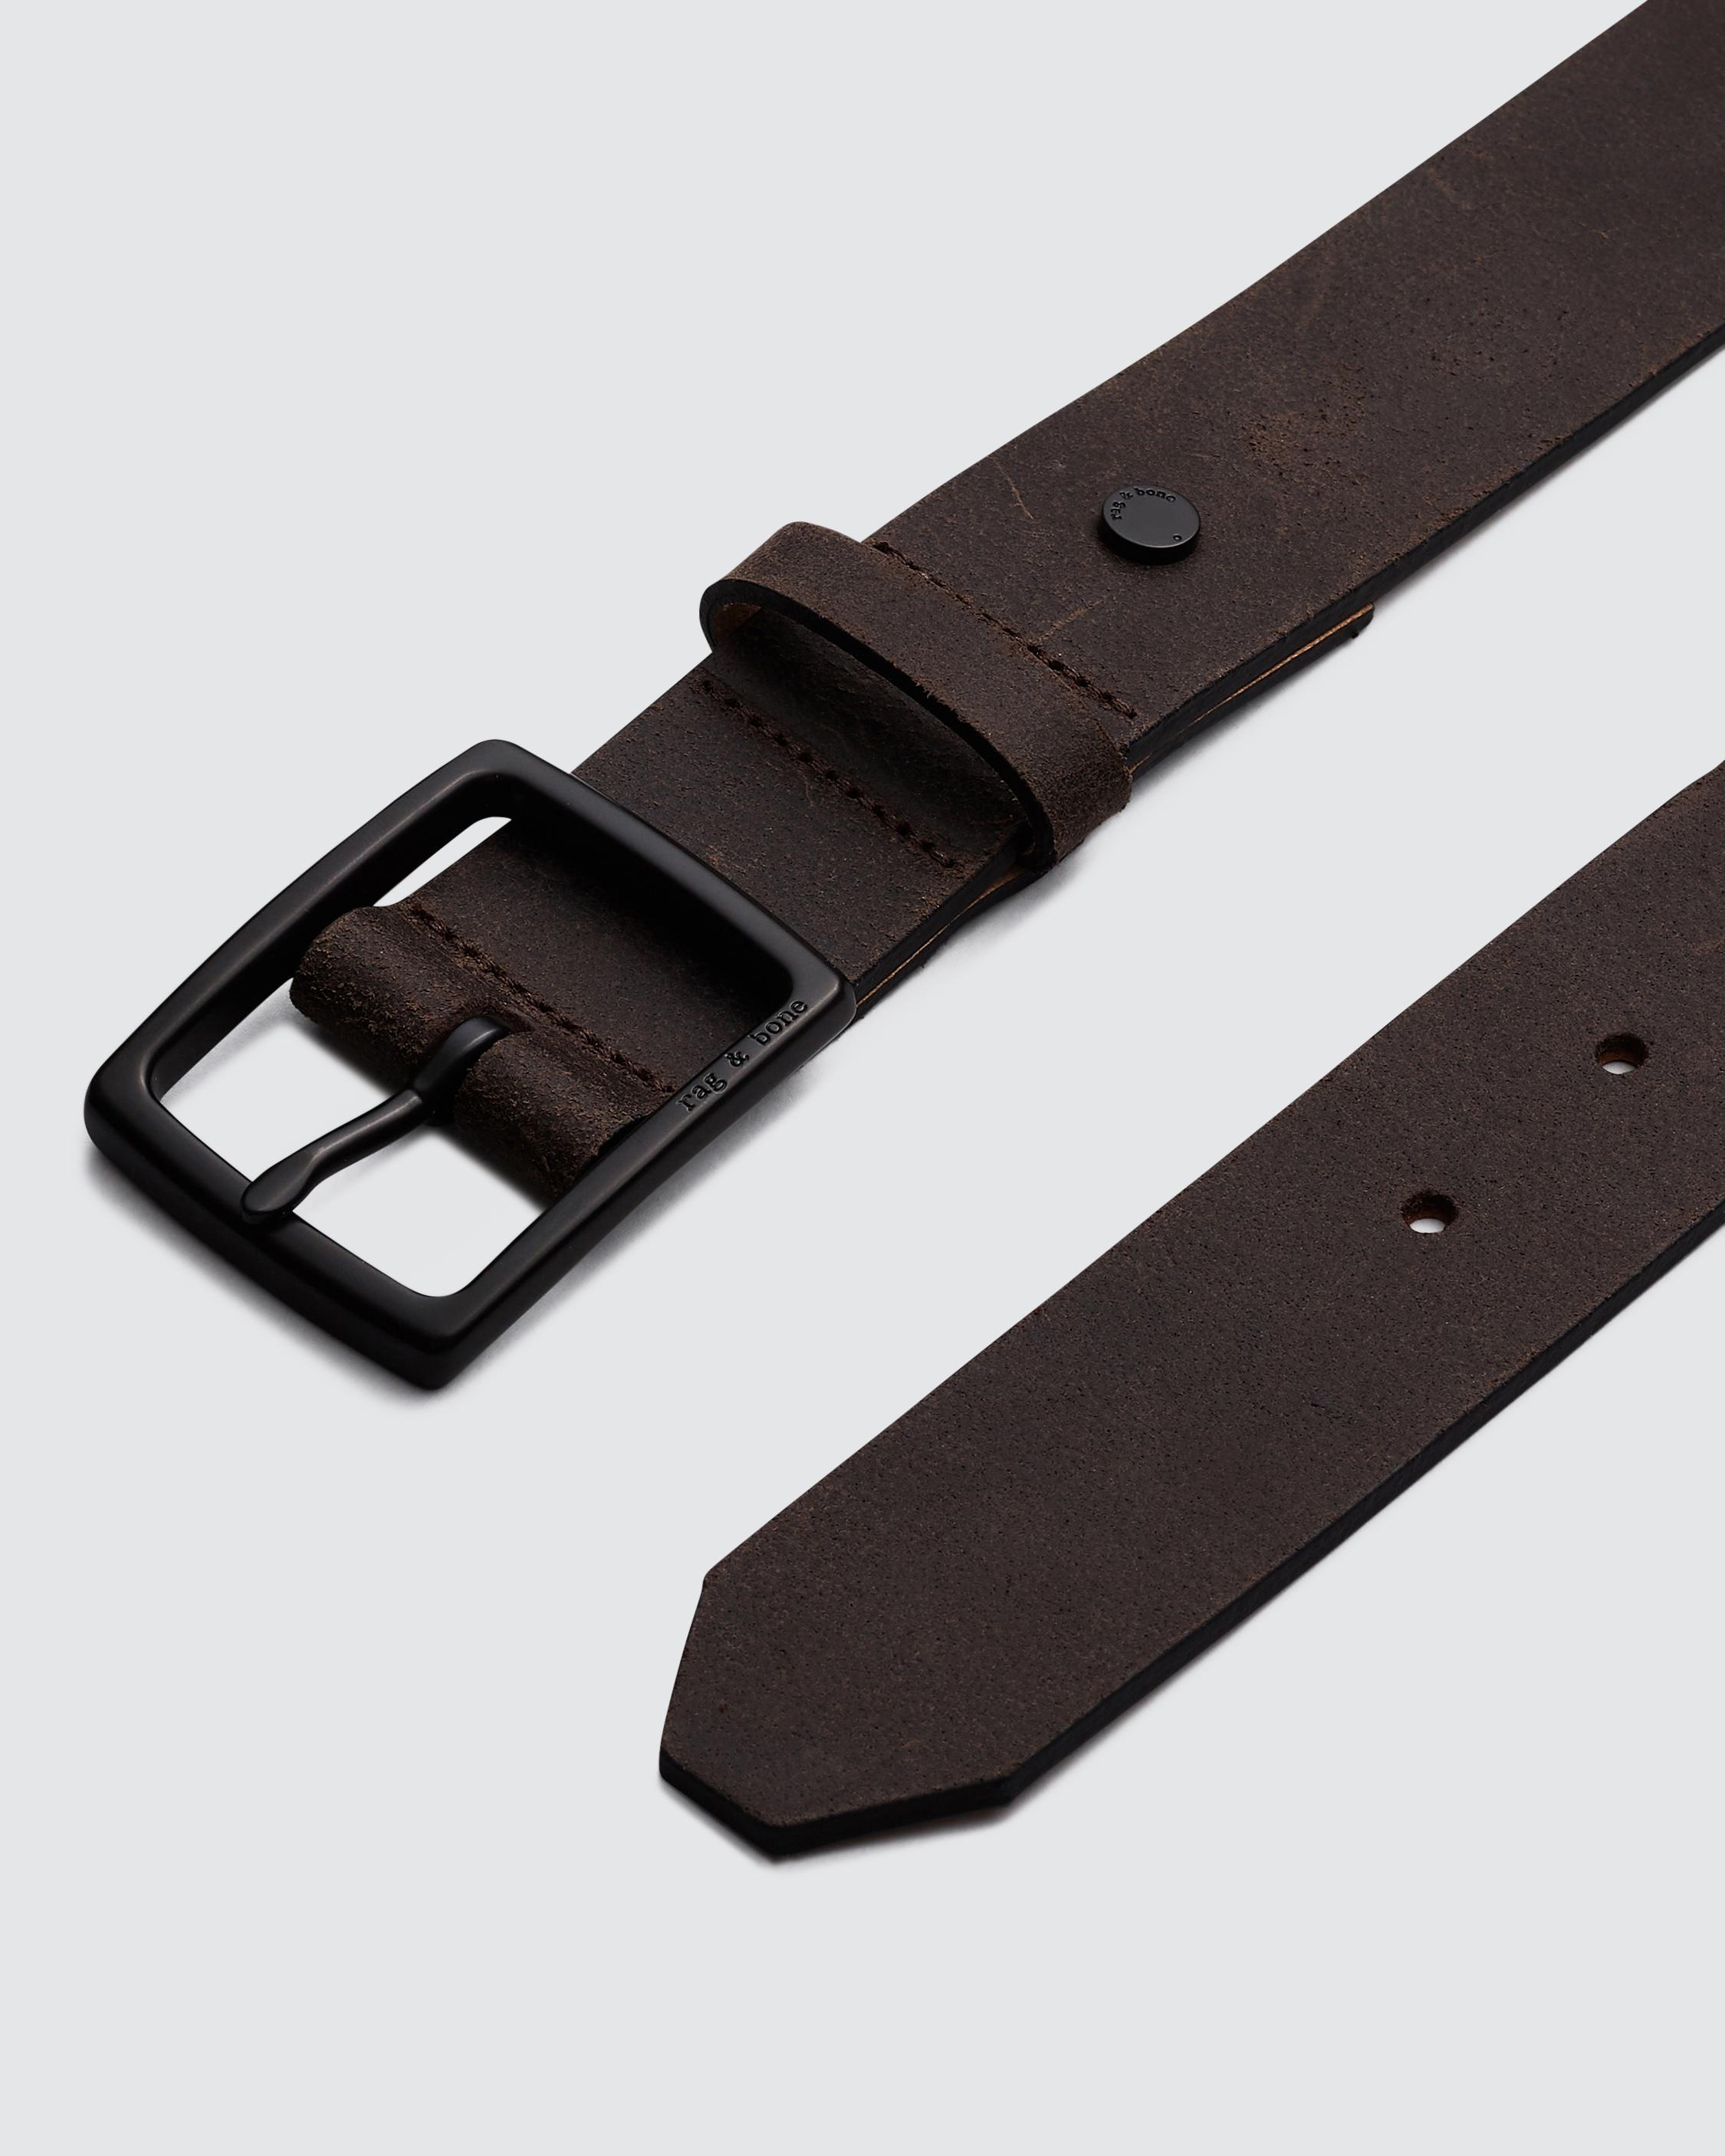 Rugged Belt
Leather 35mm Belt - 3